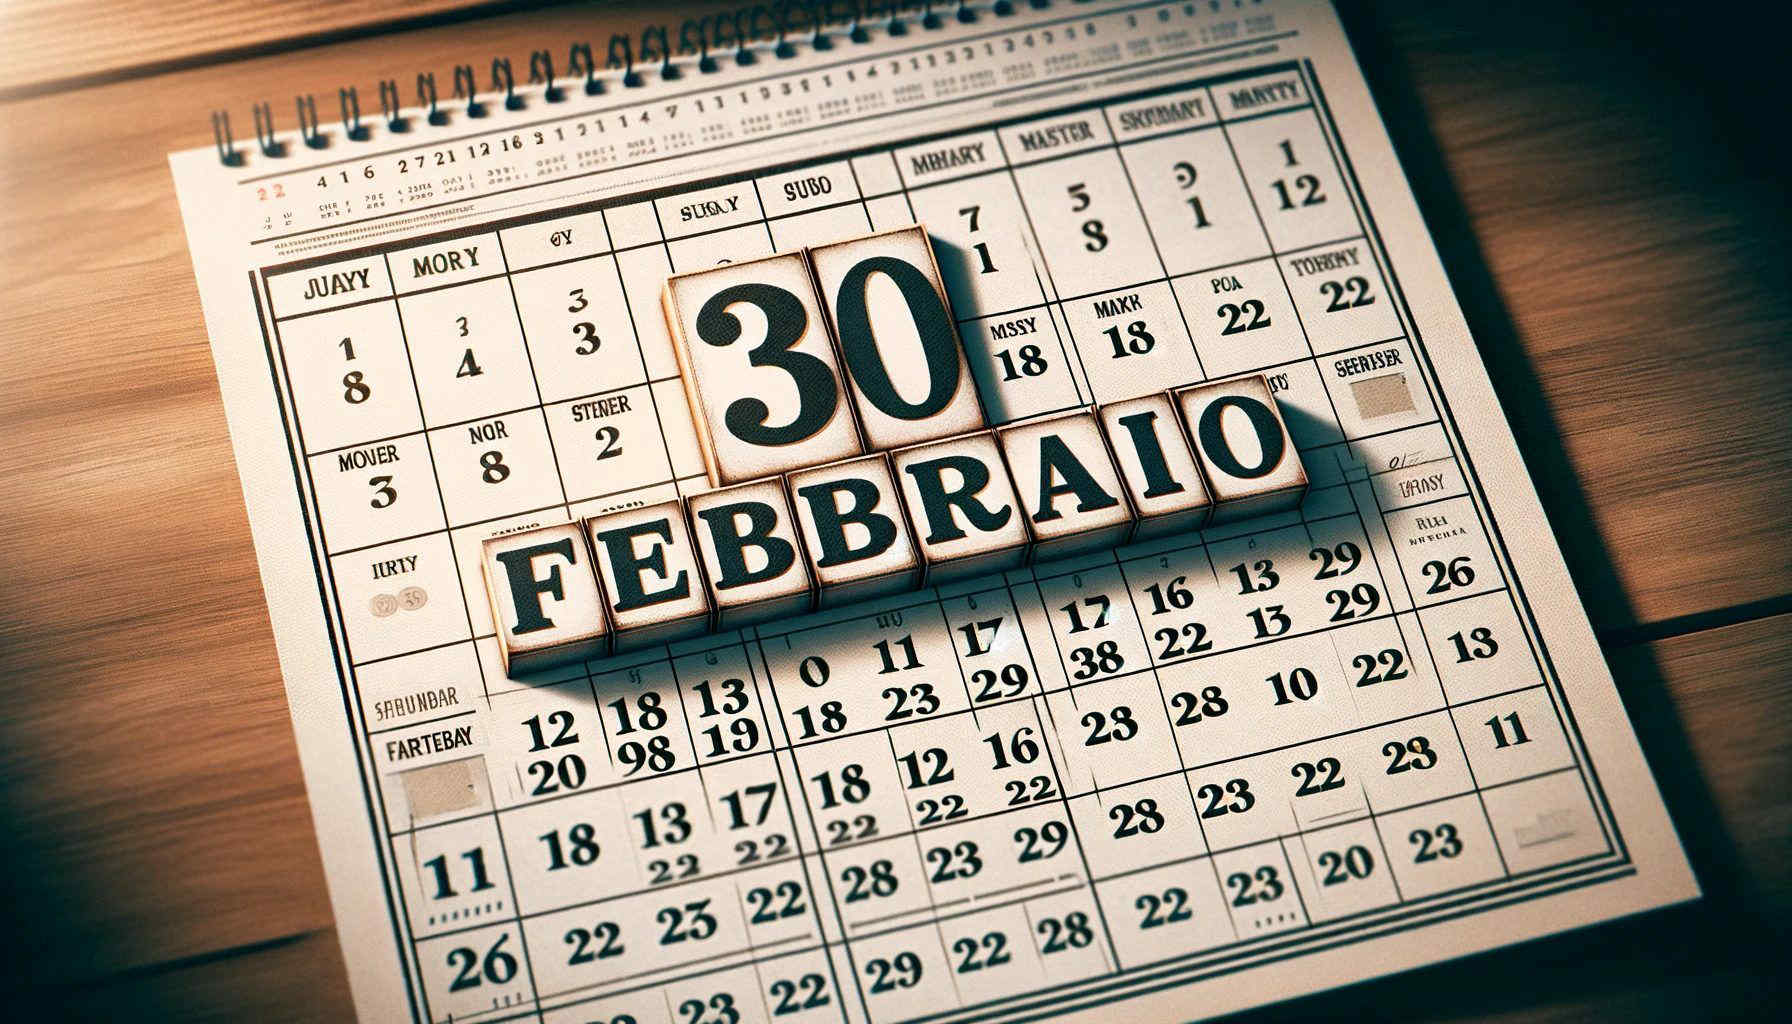 30 febbraio: il giorno inesistente nel calendario gregoriano è esistito davvero. Lo strano caso svedese